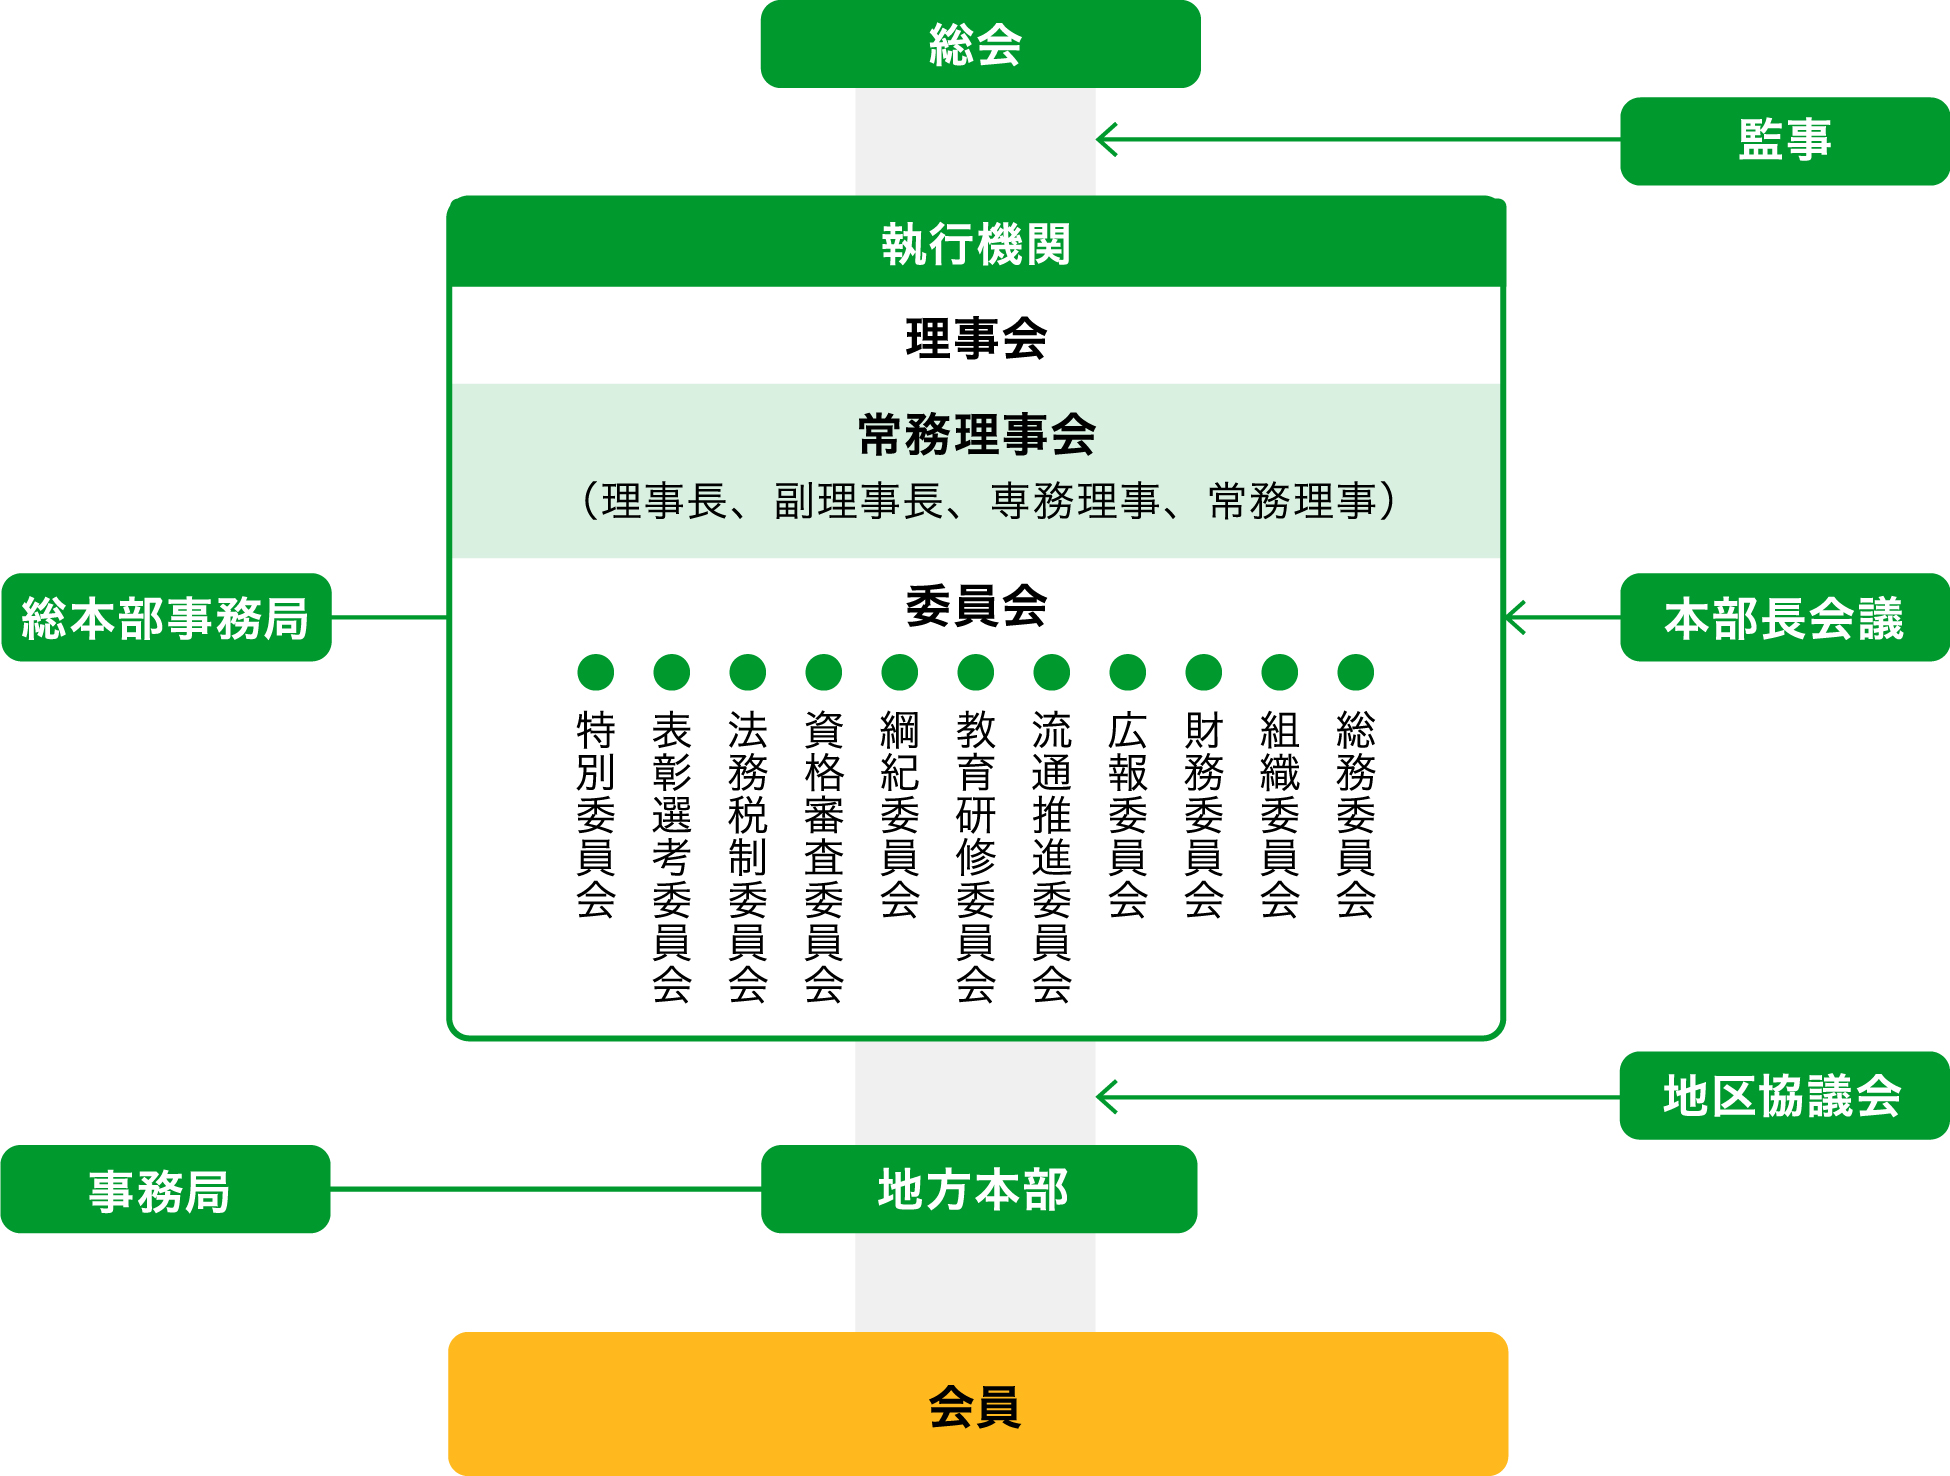 全日本不動産協会 組織系統図